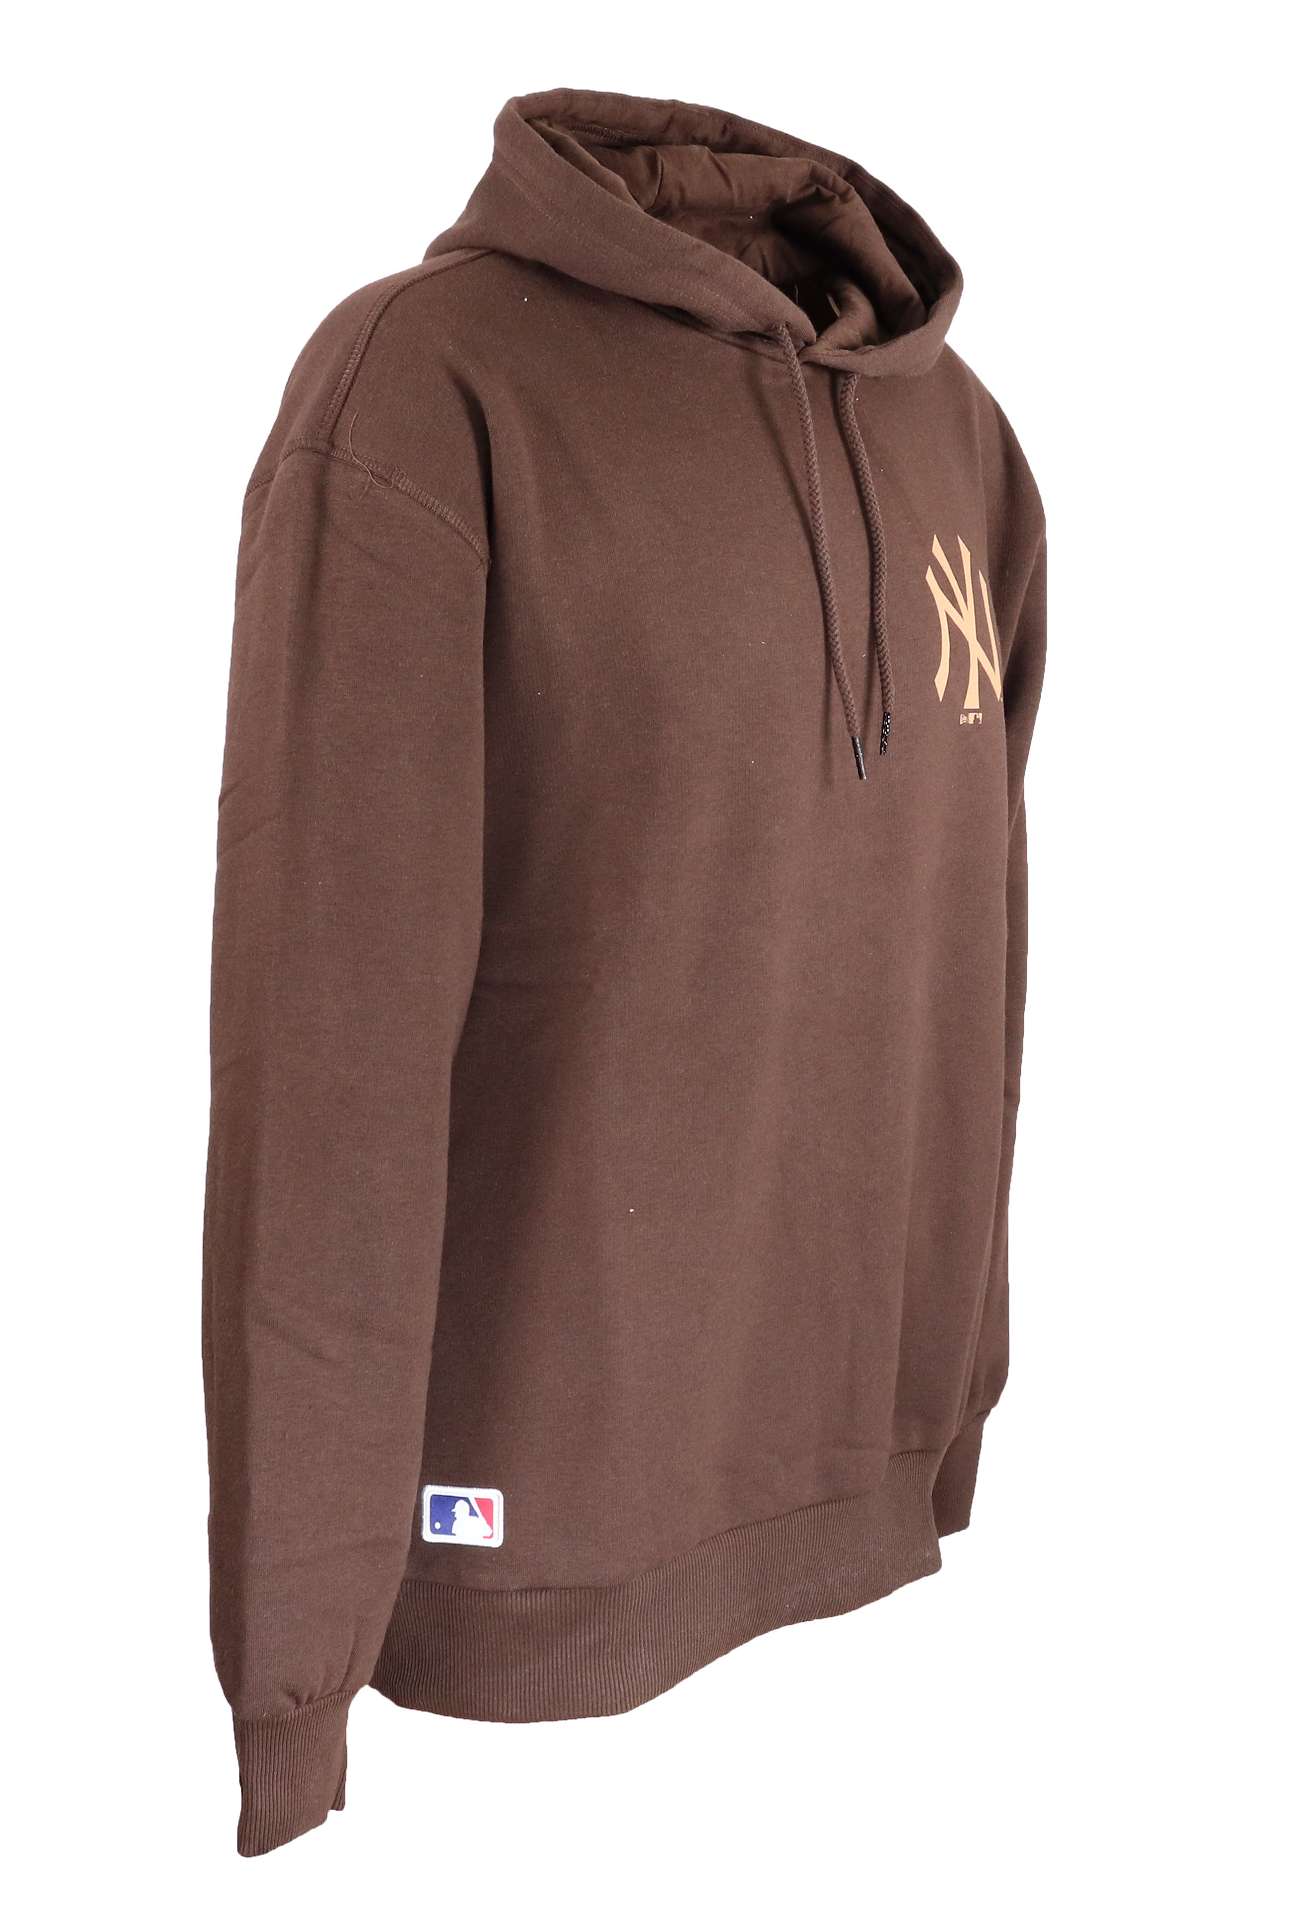 New York Yankees Midnight Brown MLB Seasonal Infill Logo Oversized Hoody New Era